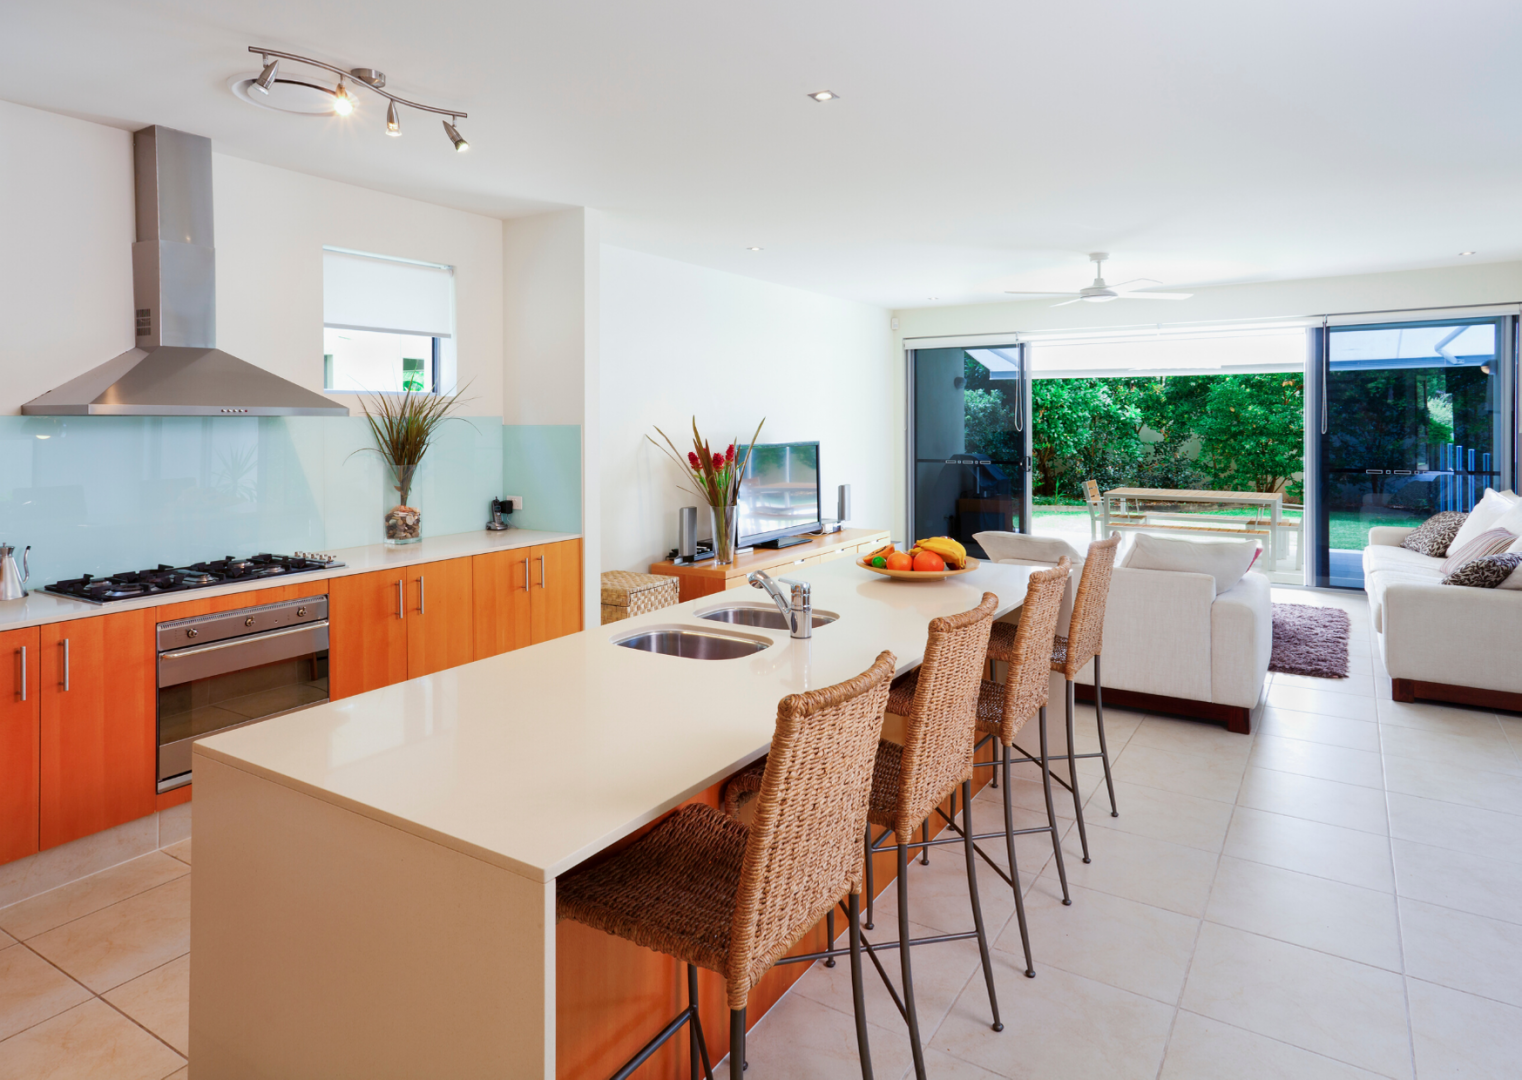 Cucina e soggiorno in un ambiente unico: alcuni trucchi per aumentare lo spazio in casa